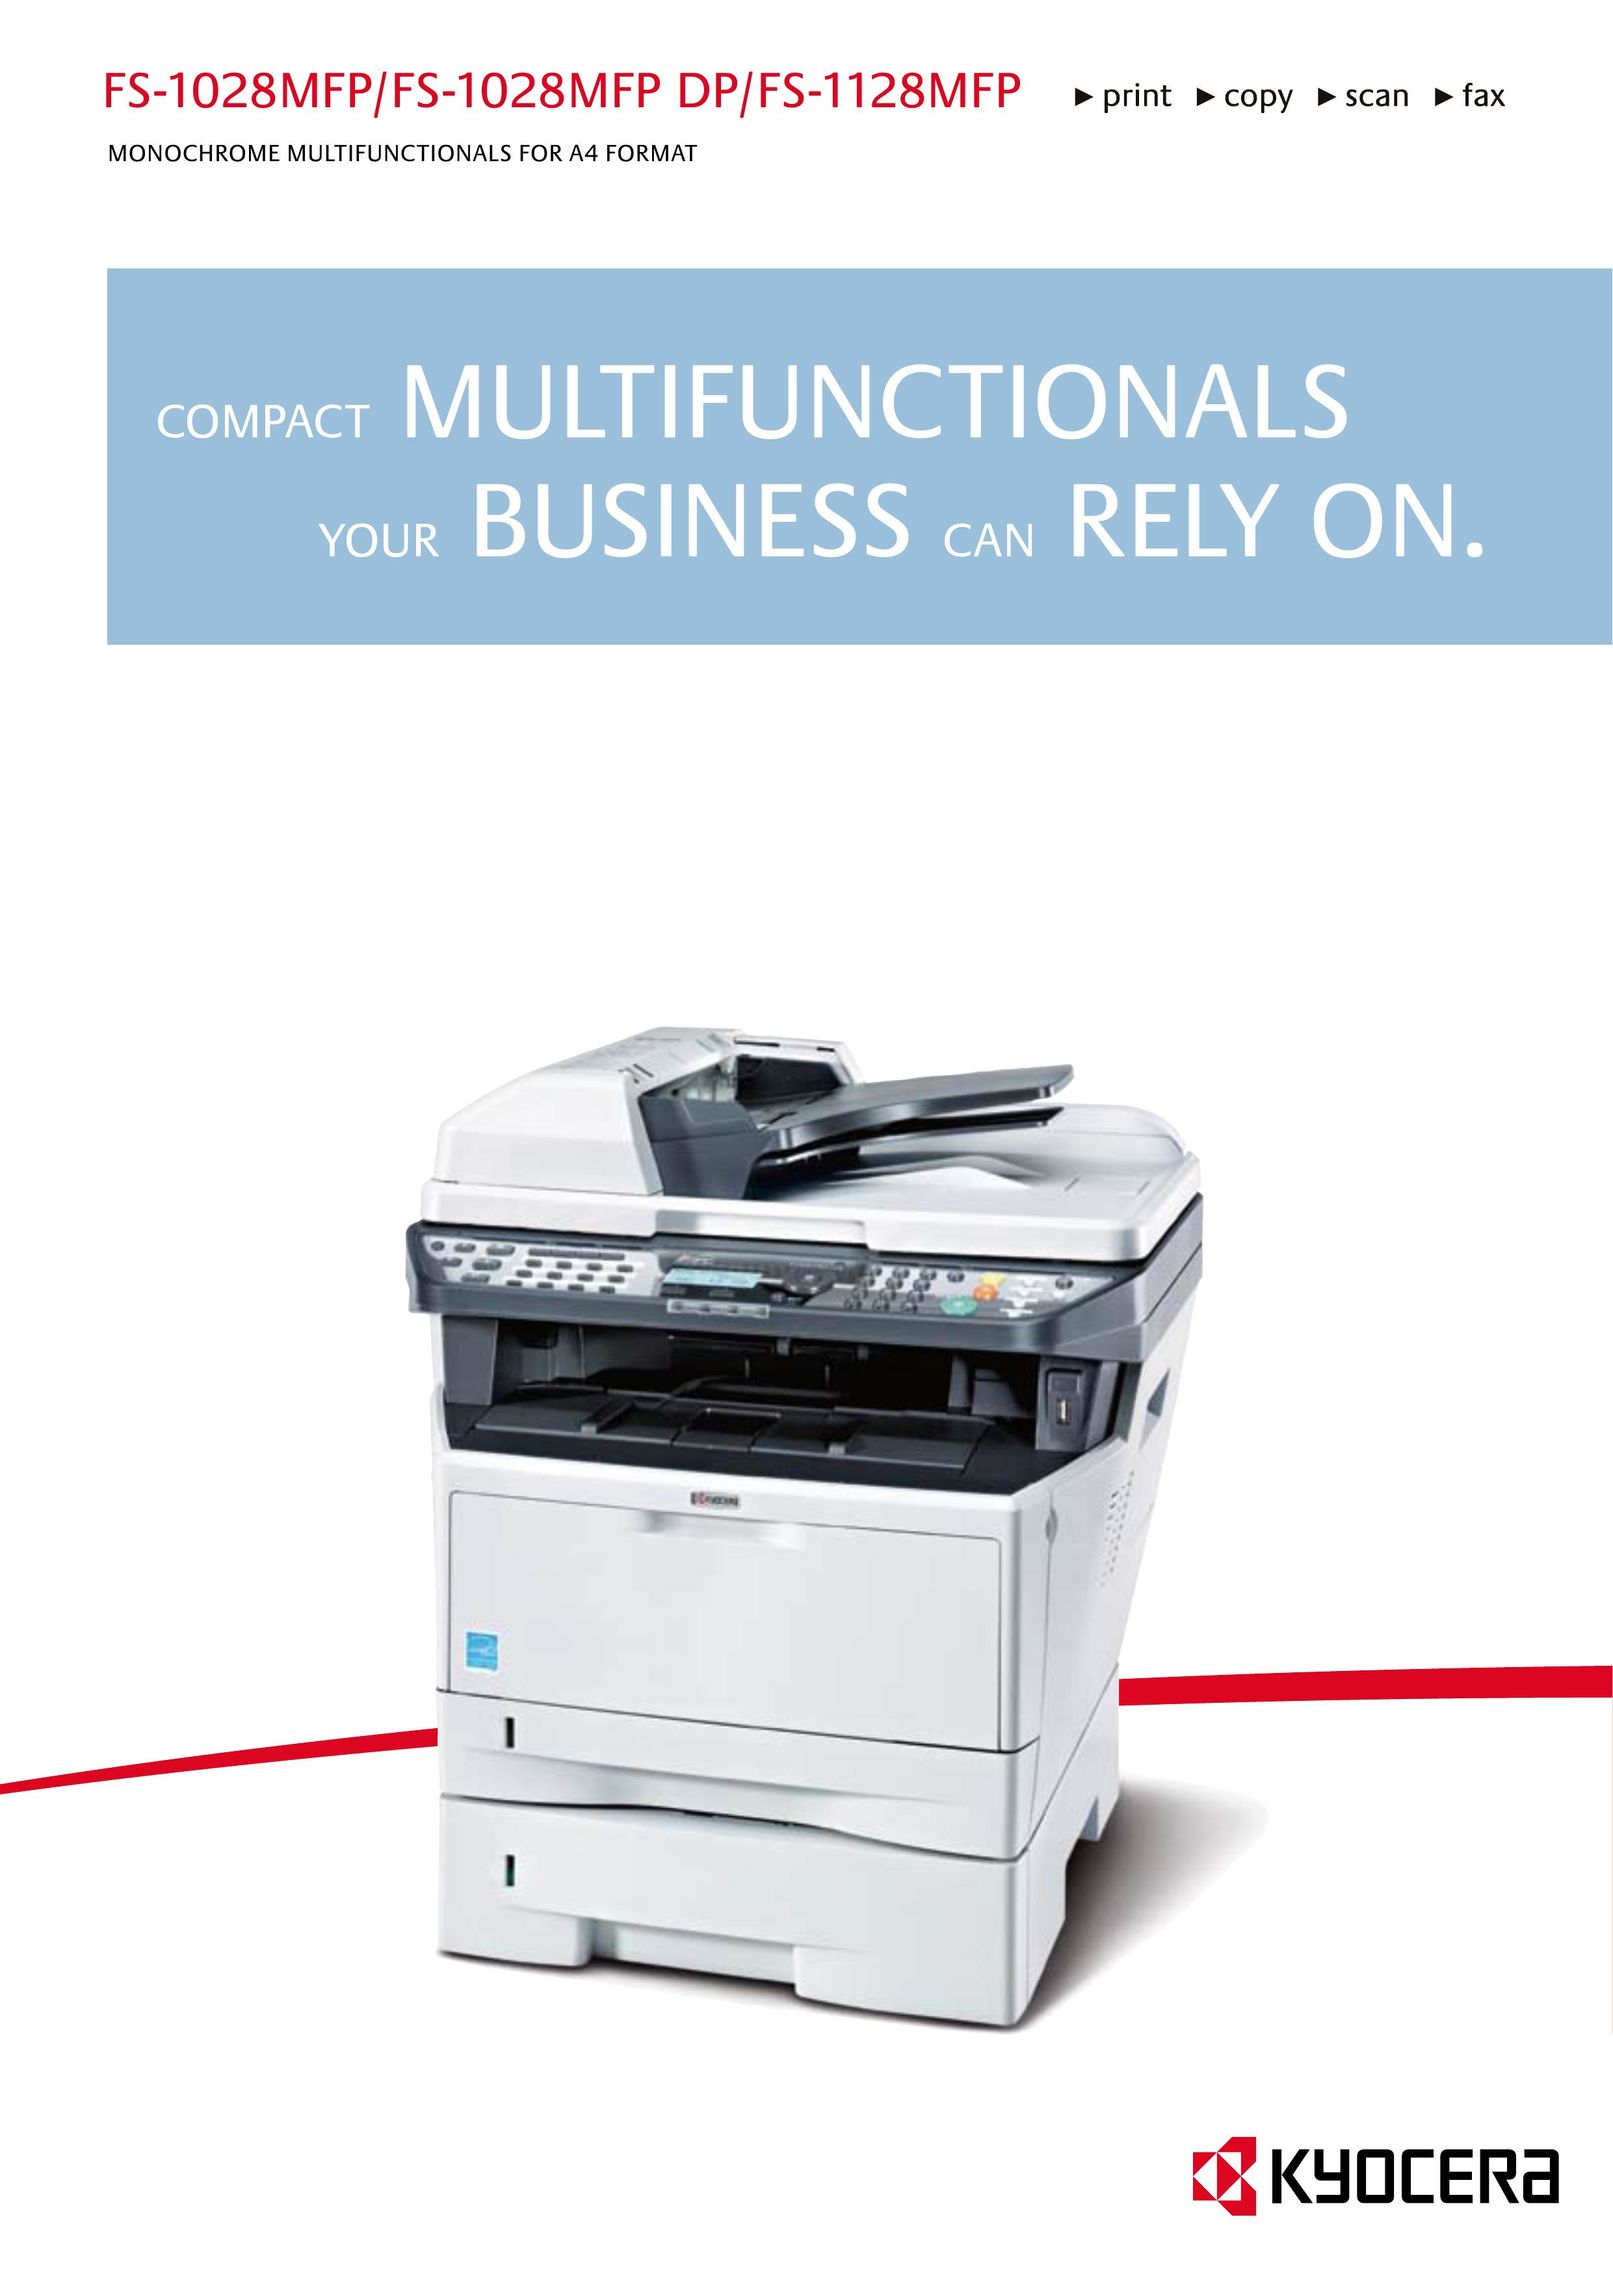 Kyocera FS-1128MFP All in One Printer User Manual